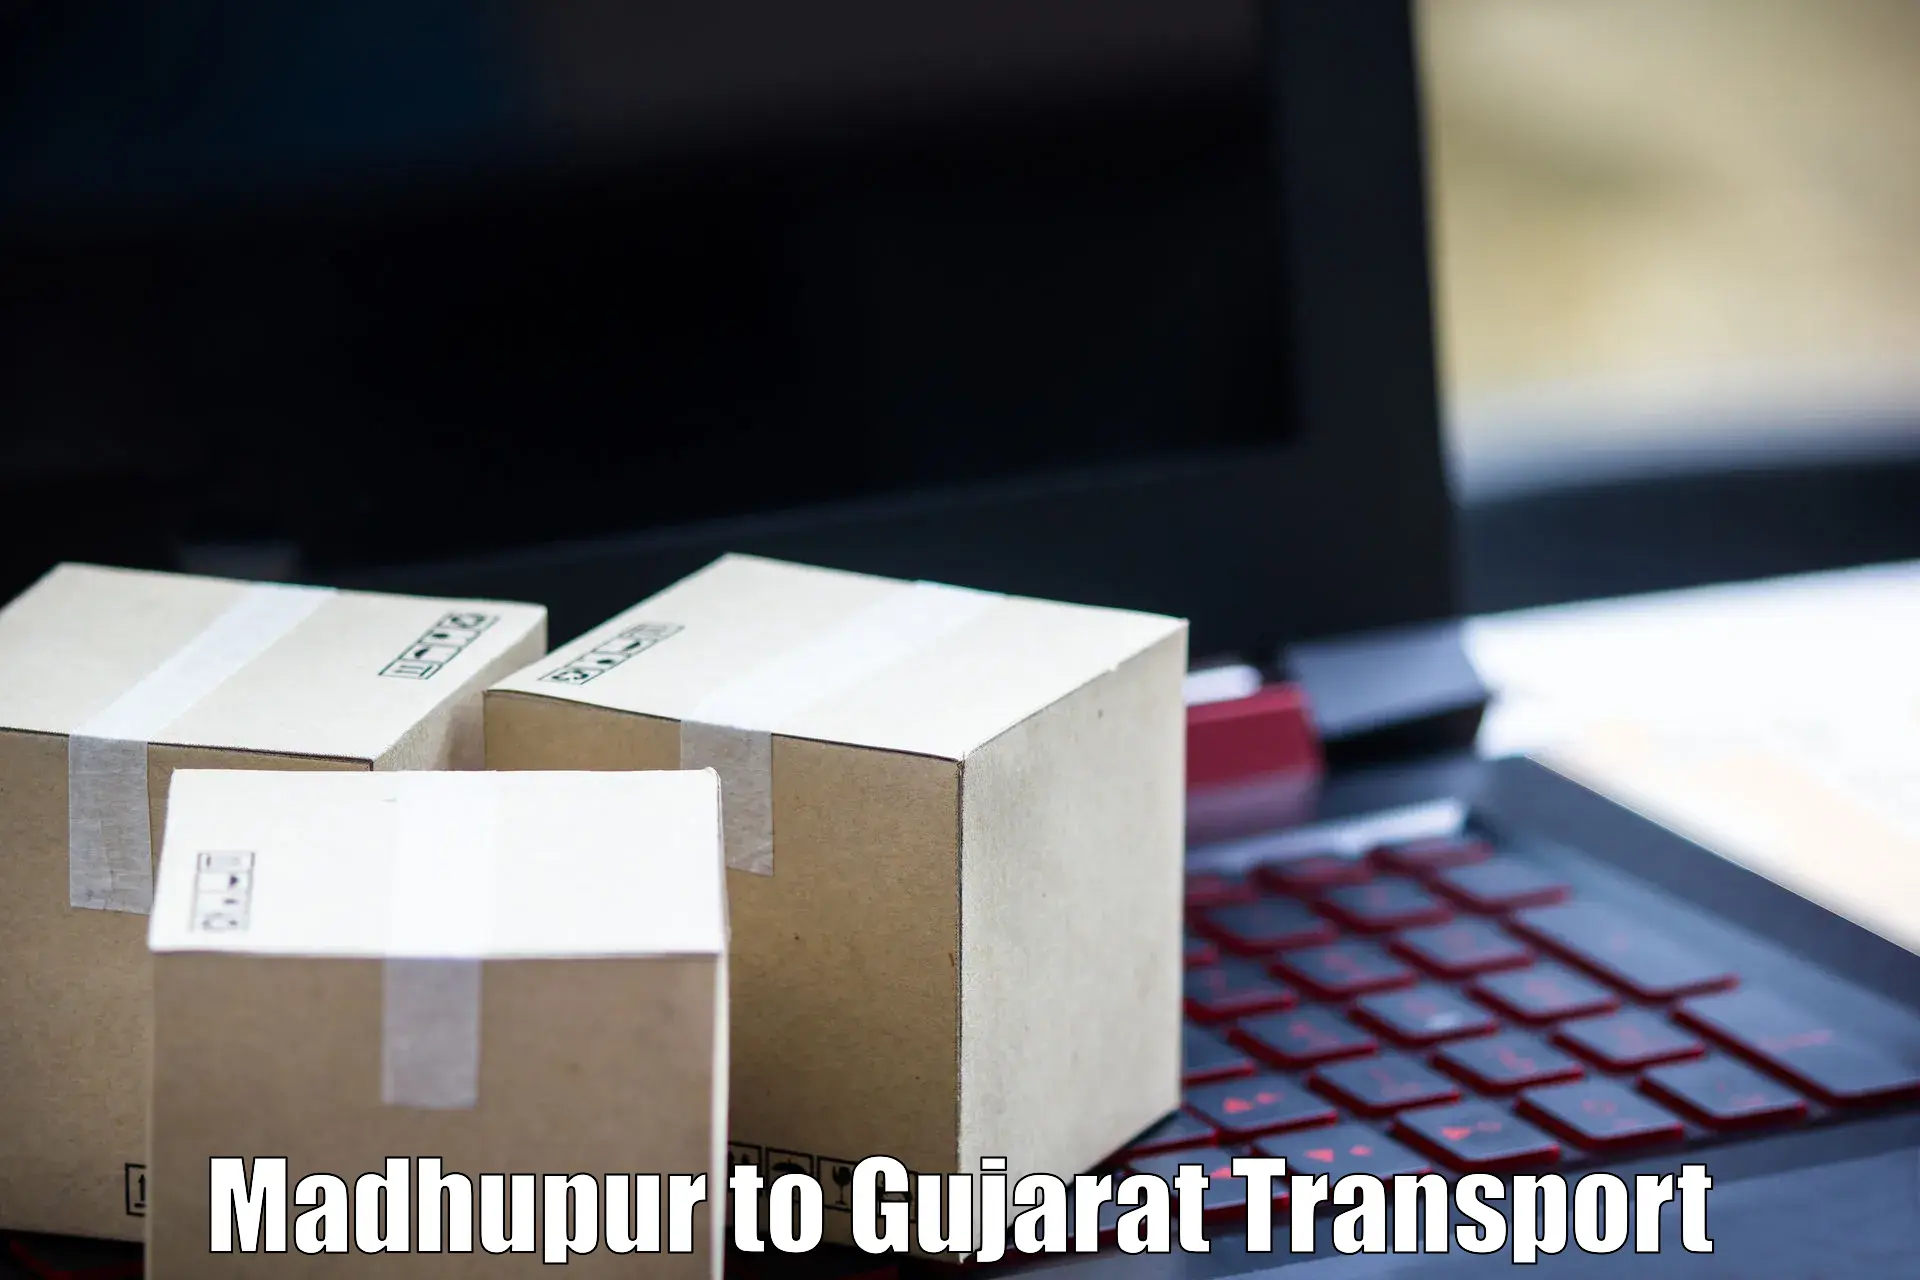 Nearby transport service Madhupur to Gandhinagar